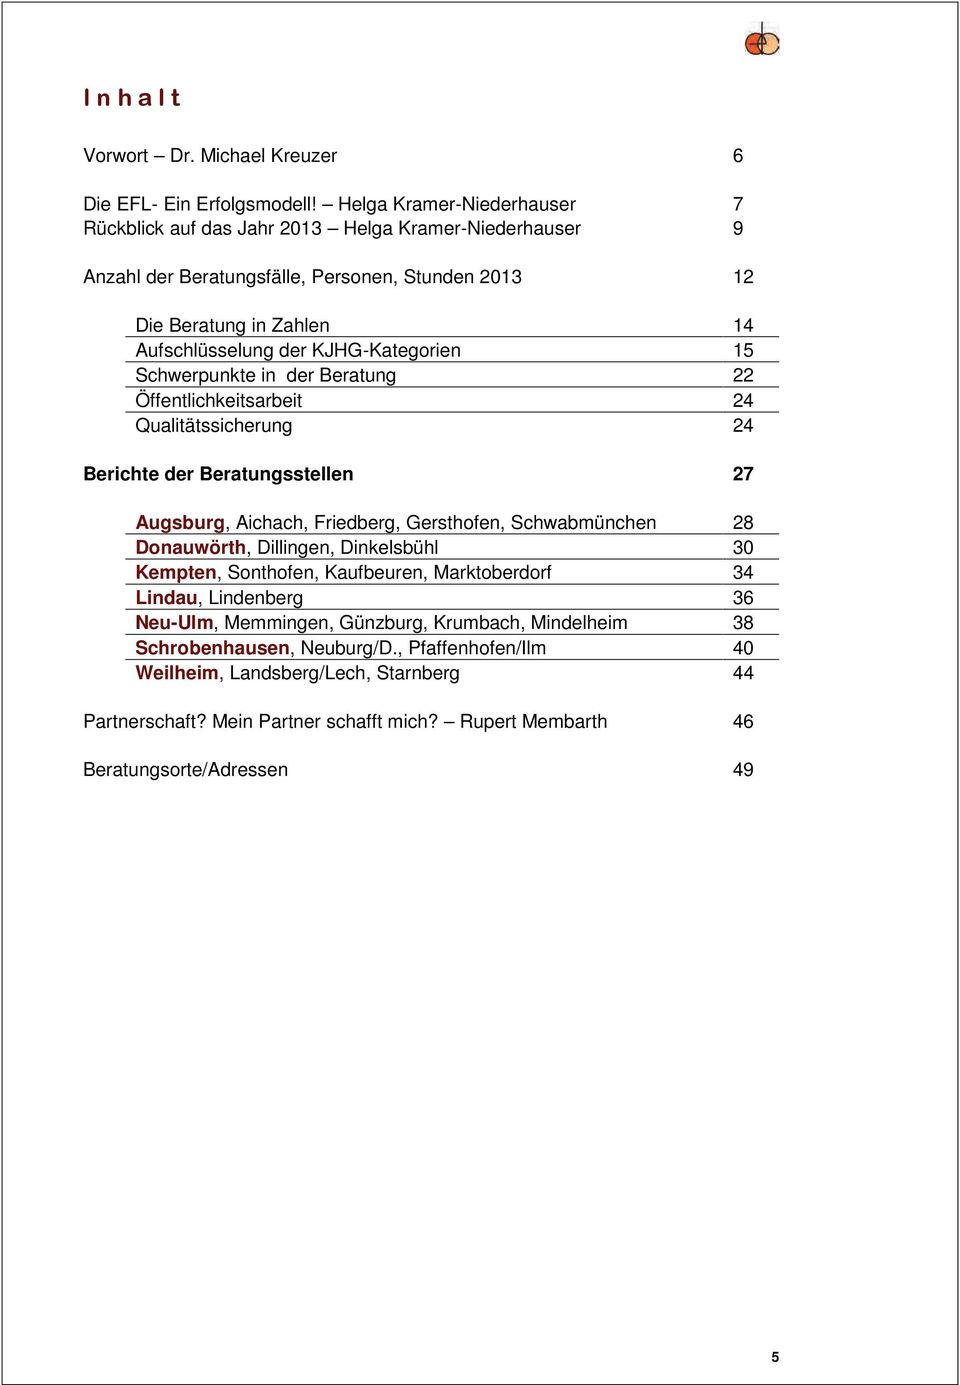 KJHG-Kategorien 15 Schwerpunkte in der Beratung 22 Öffentlichkeitsarbeit 24 Qualitätssicherung 24 Berichte der Beratungsstellen 27 Augsburg, Aichach, Friedberg, Gersthofen, Schwabmünchen 28